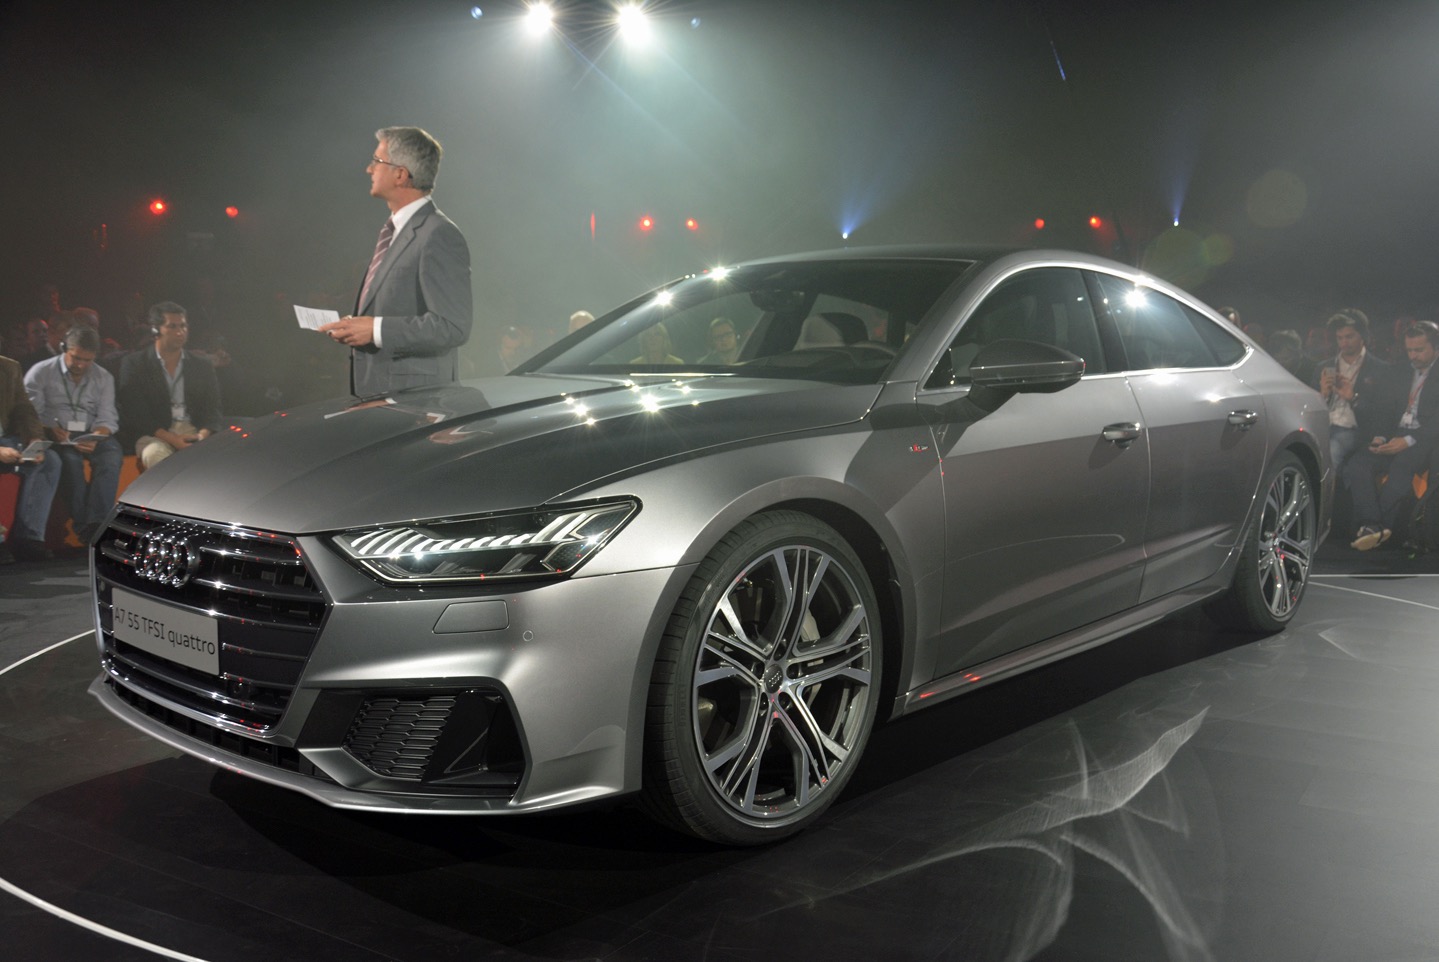 Audi Sport Planning RS Gasoline Models On Separate Platform